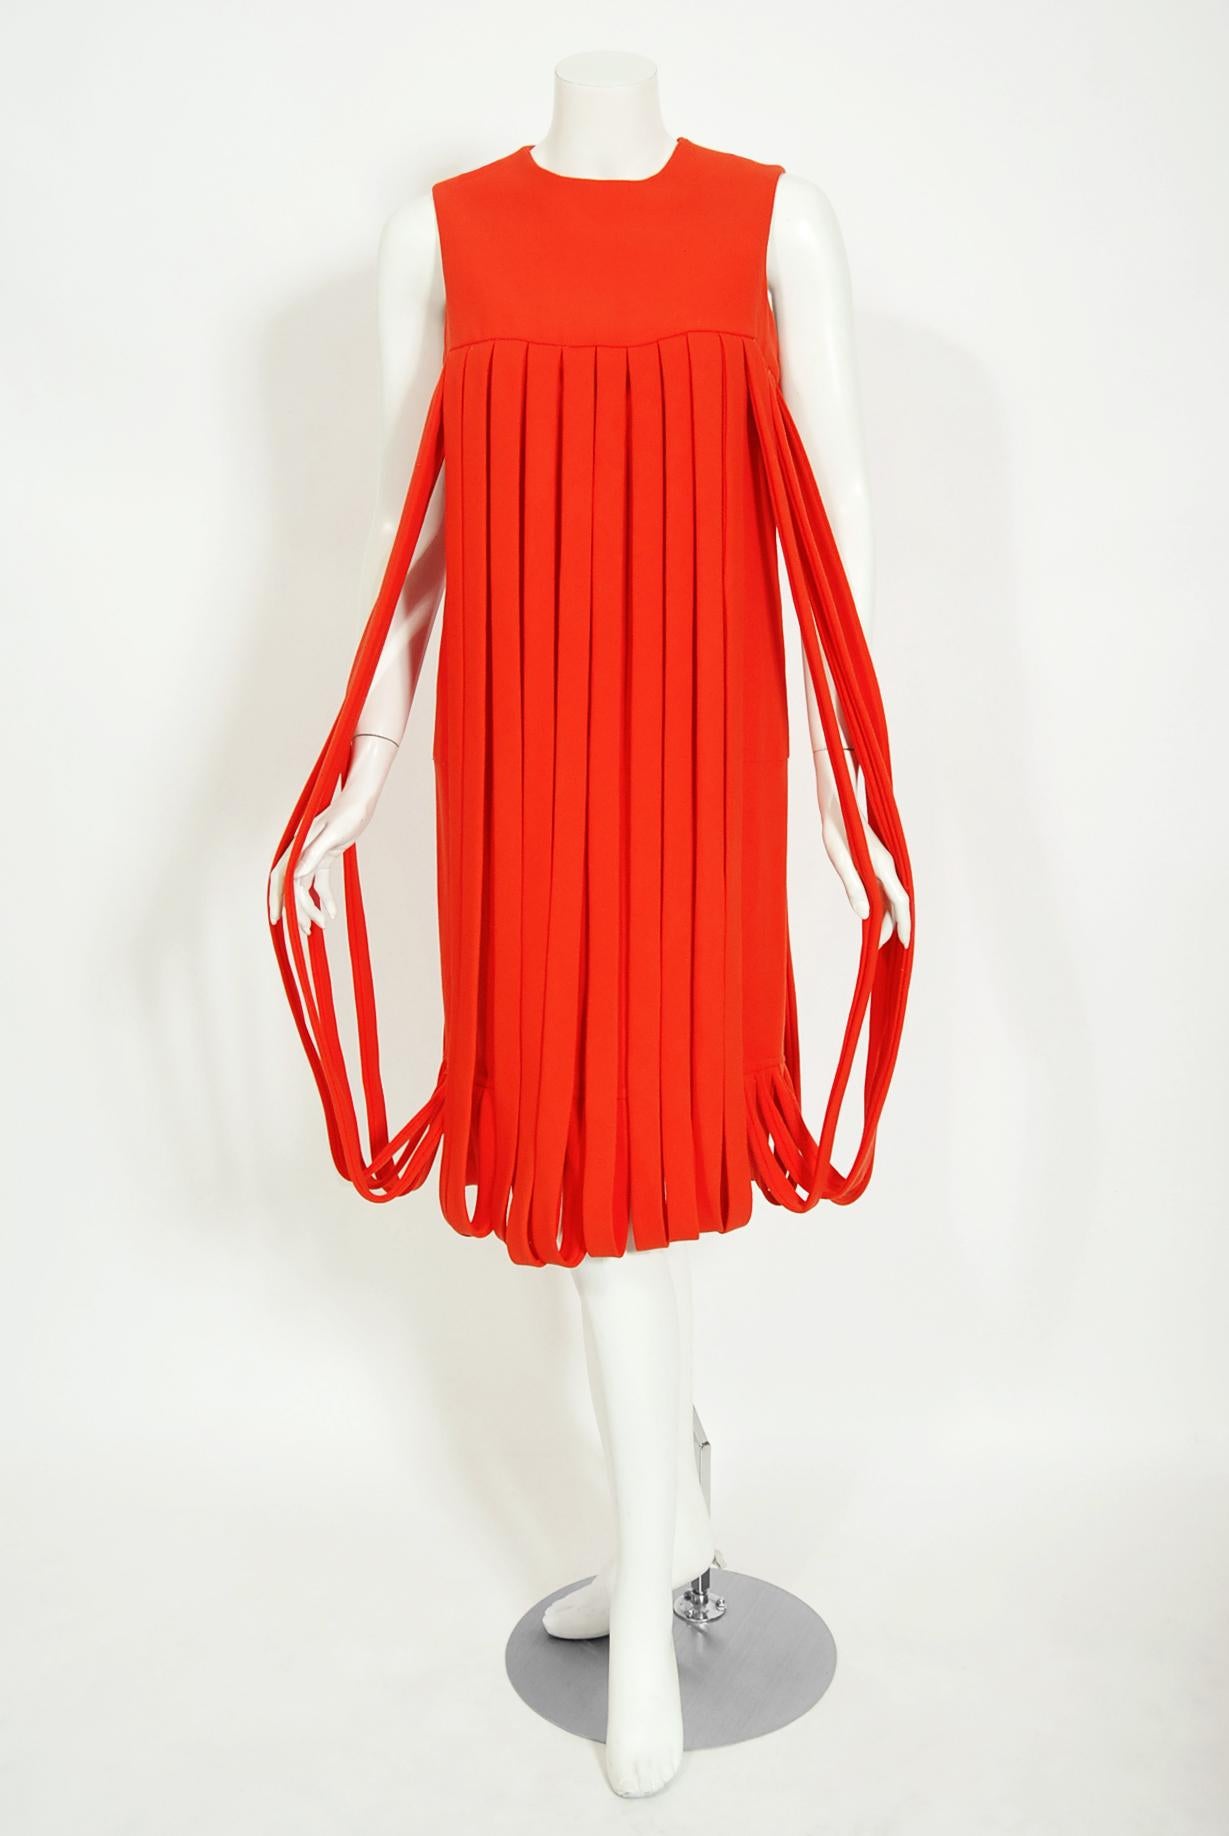 1967 dress